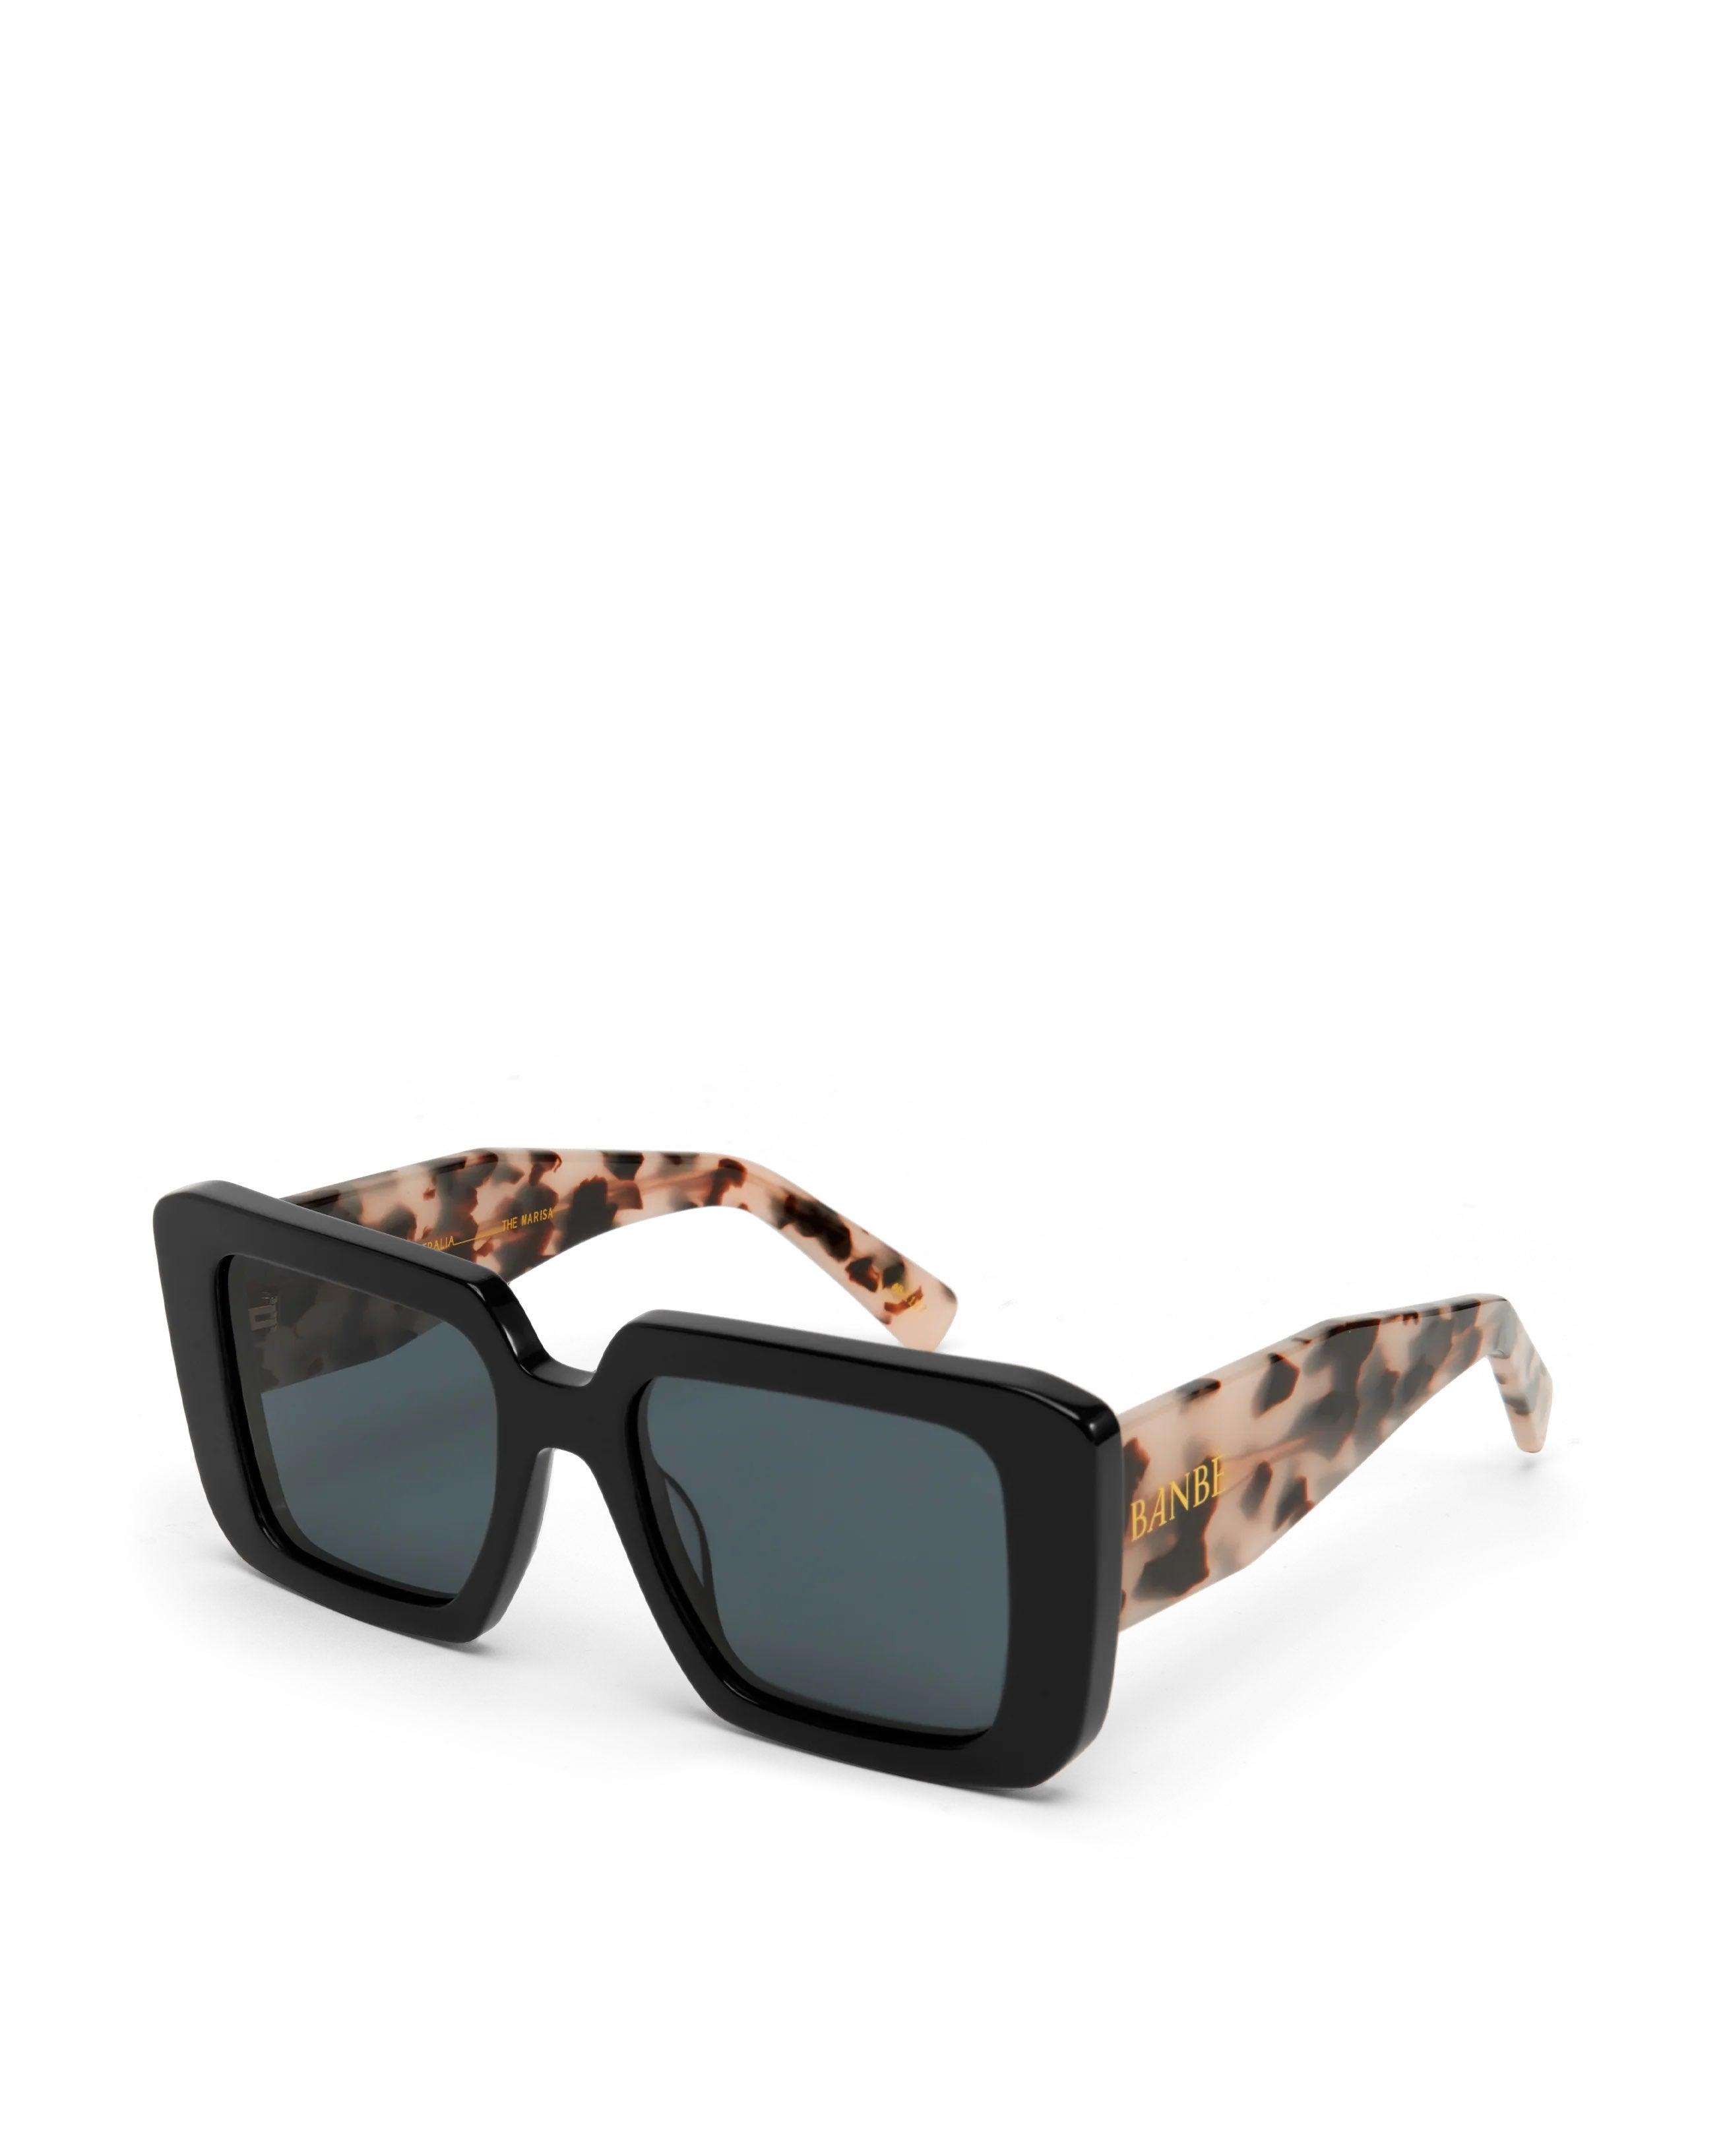 The Marisa Sunglasses - Black/Blonde Tortoise - Flutter